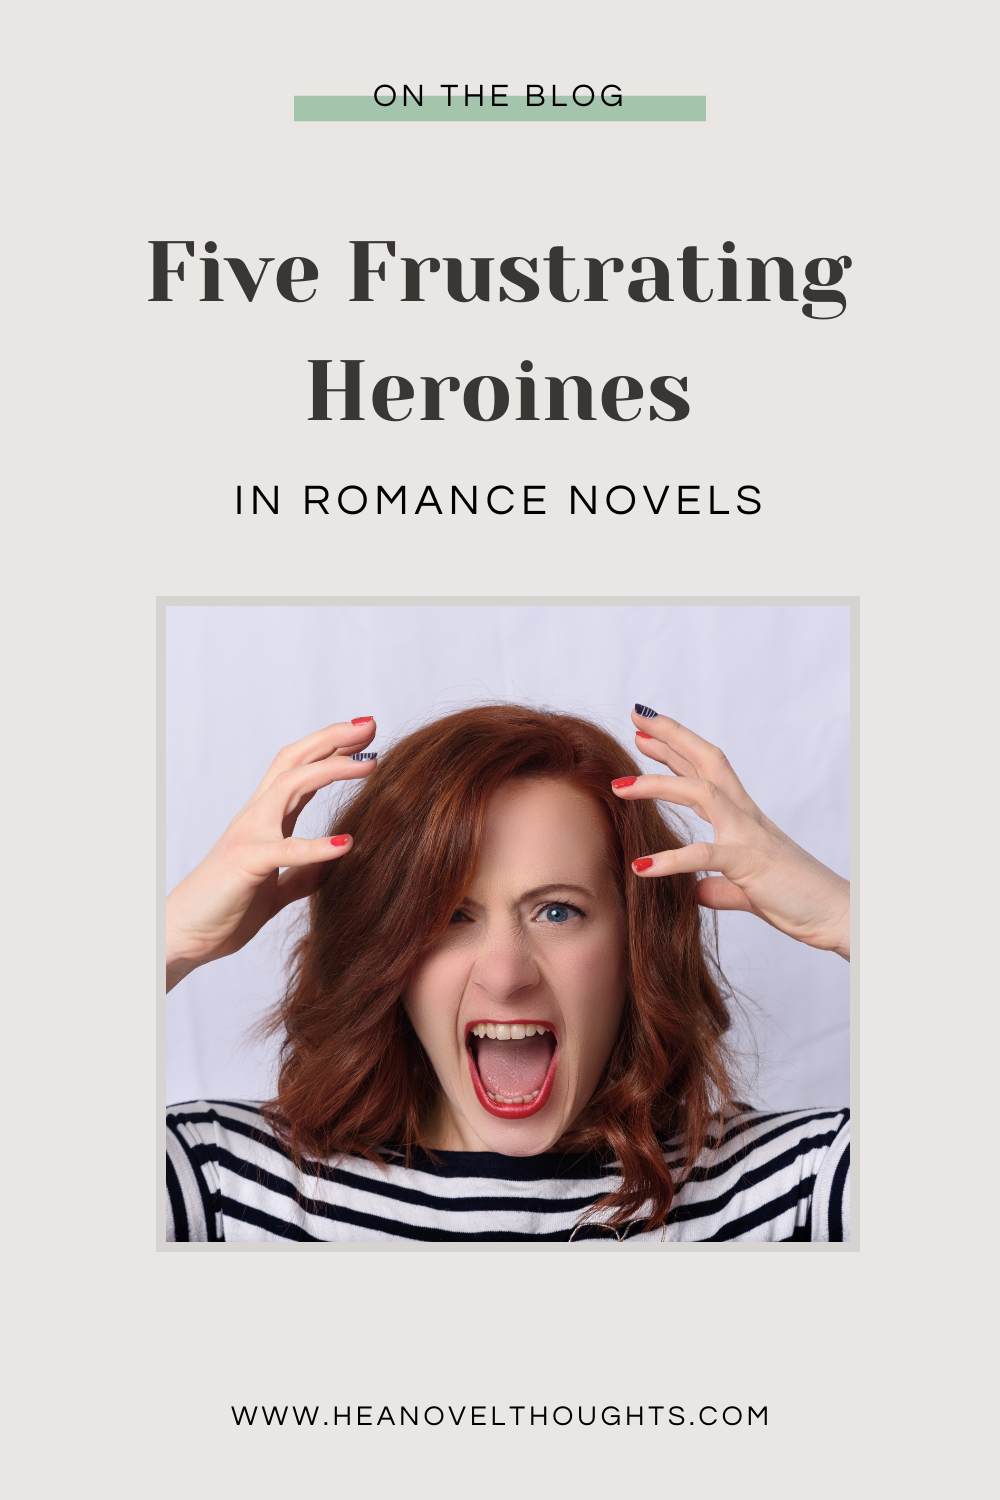 5 Types of Very Frustrating Heroines